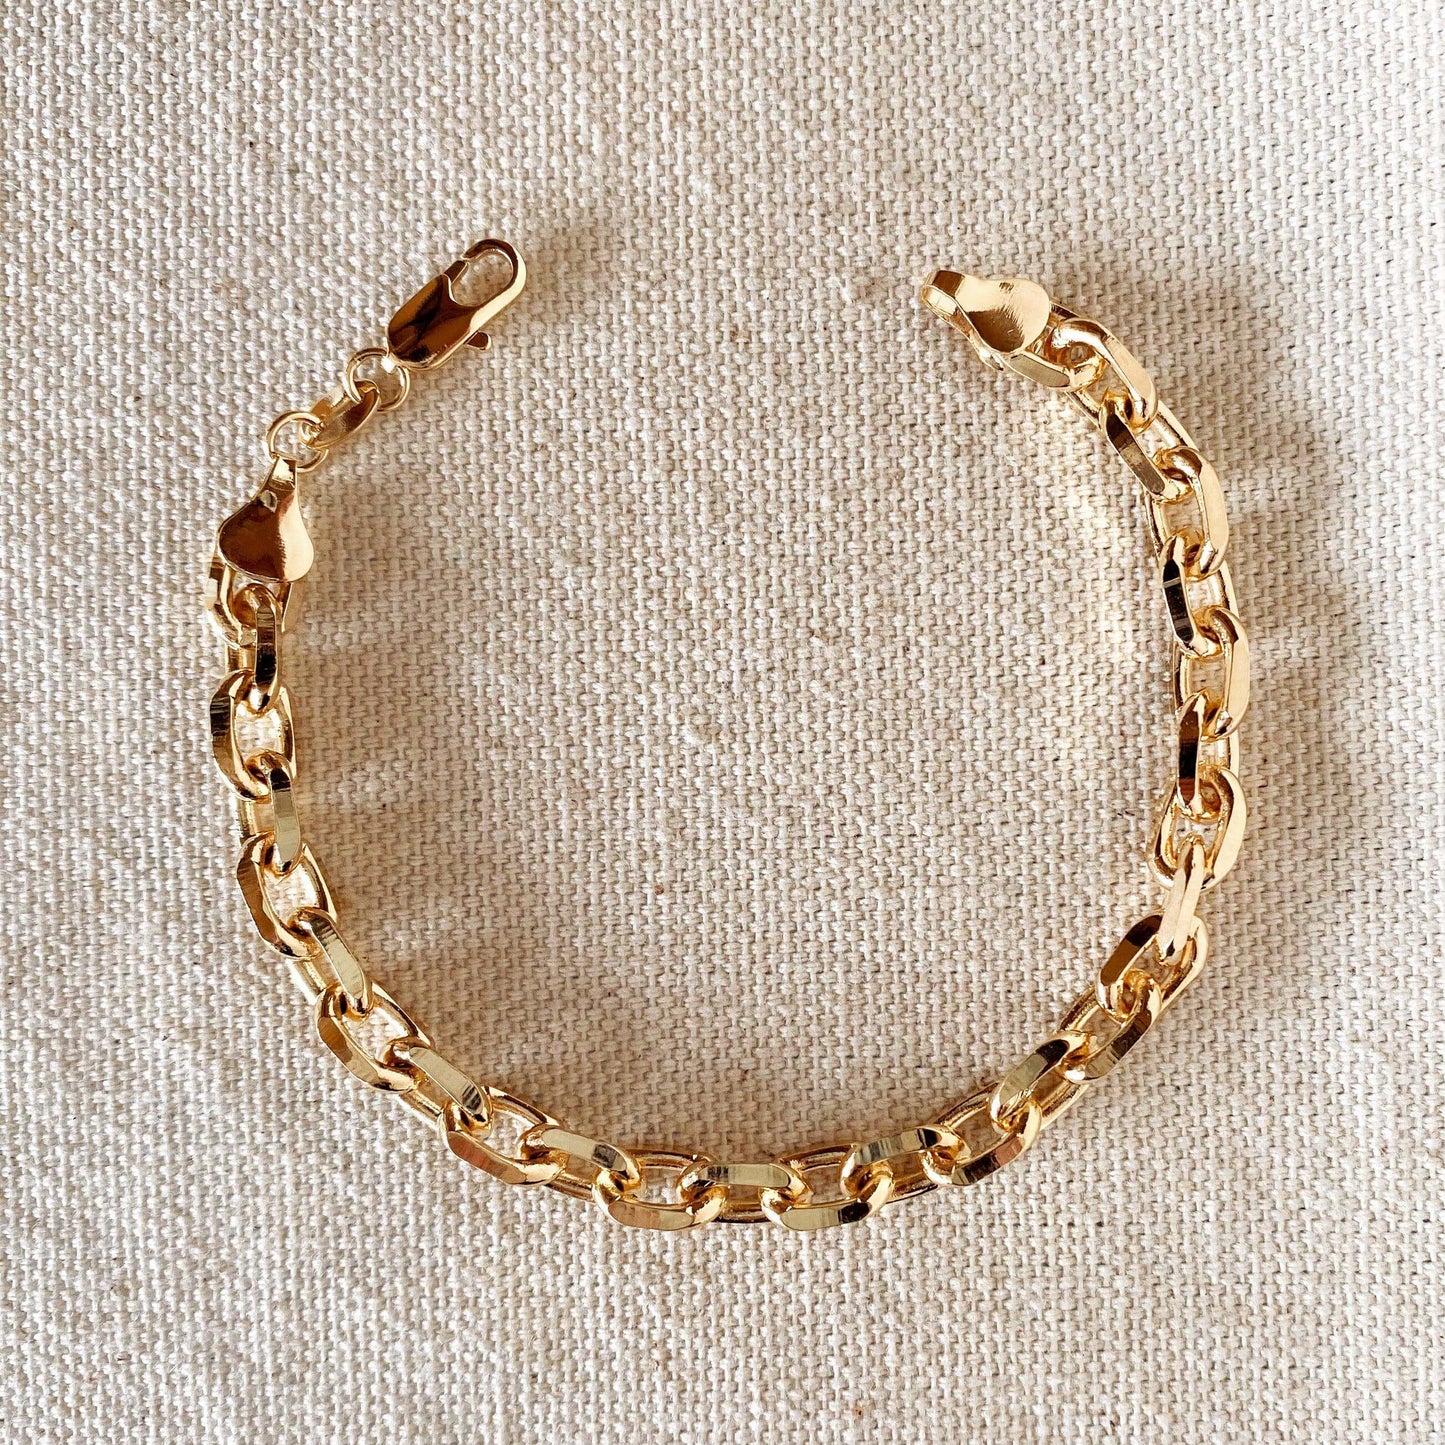 GoldFi Gorgeous 18k Gold Filled 7mm Link Bracelet